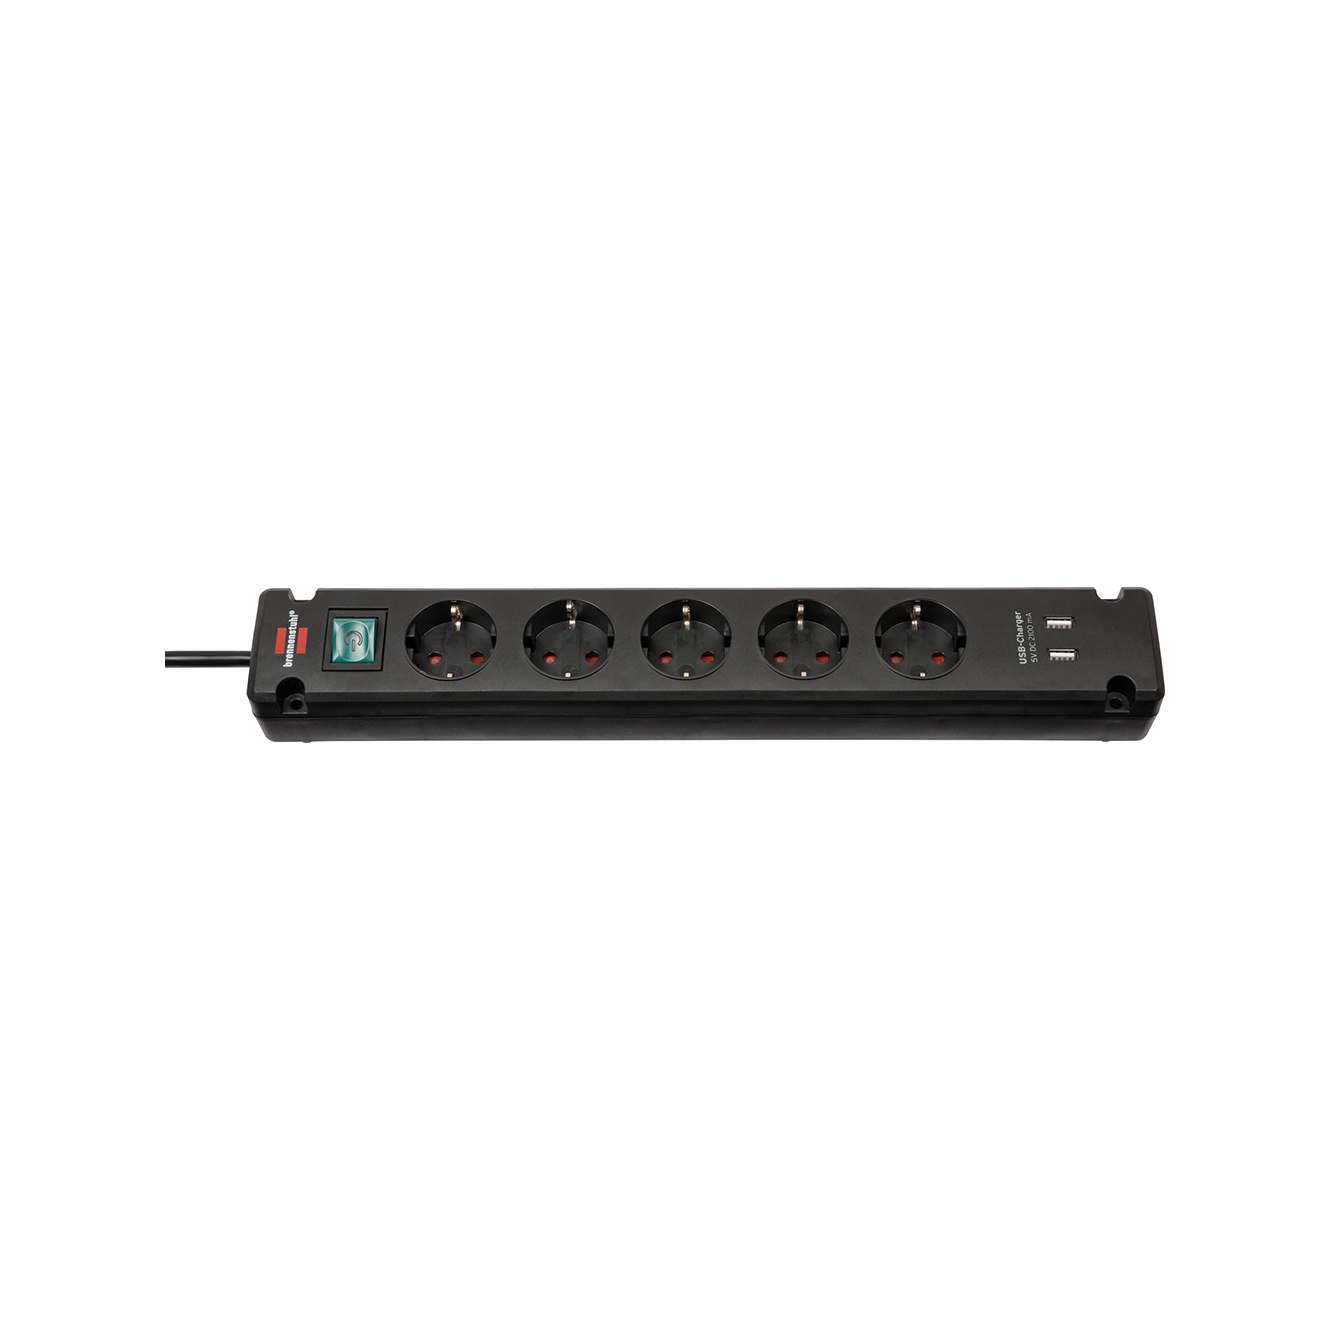 Удлинитель Brennenstuhl Bremounta 5 розеток выключатель 2 USB для зарядки кабель 3 м H05VV-F 3G1,5 черный 1150660315